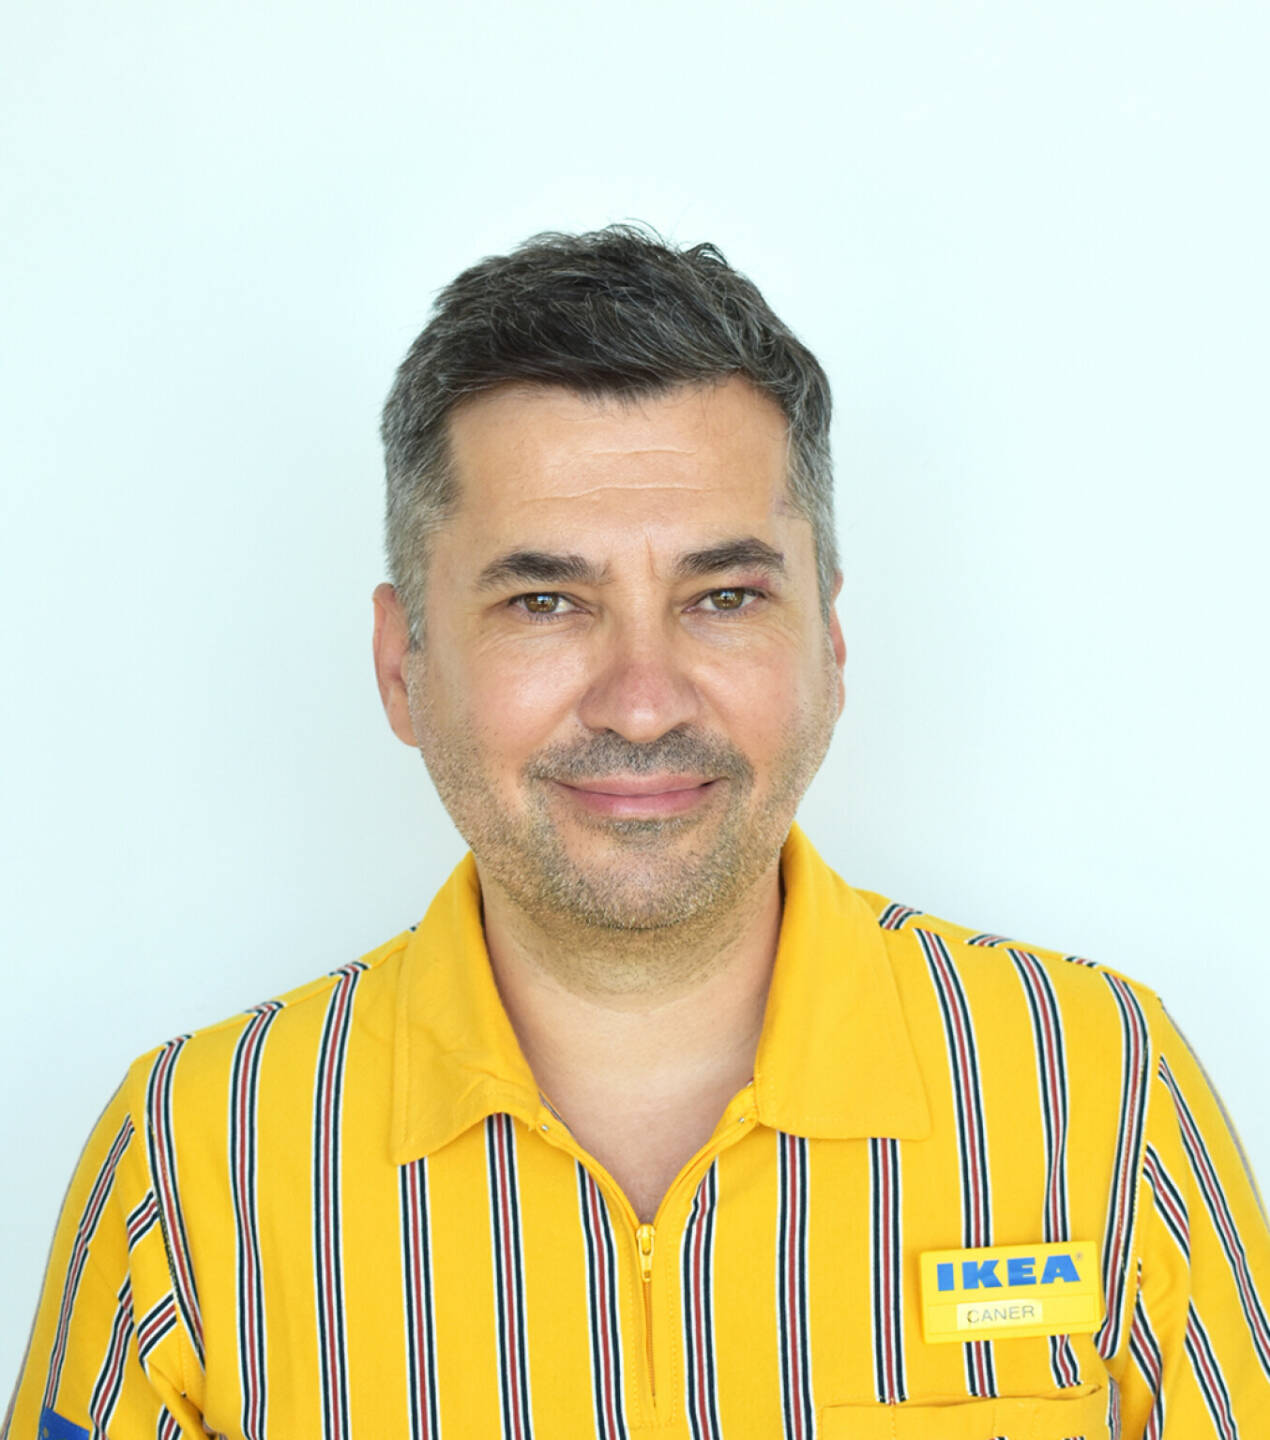 Caner Balabanulug ist seit Juli neuer Market Manager von Ikea Vösendorf. Credit: Ikea